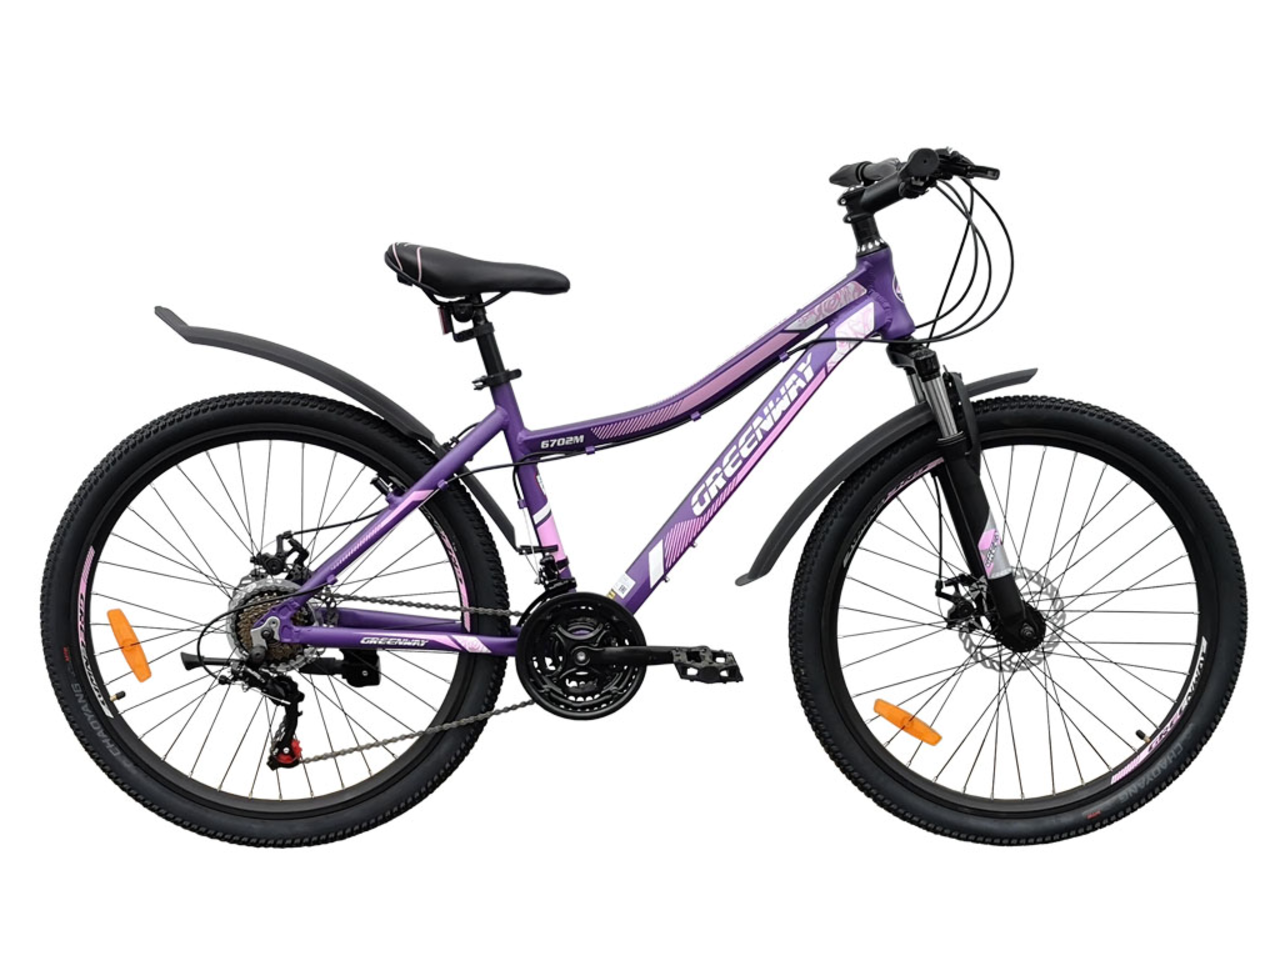 Велосипед Greenway 6702M 26 (16, фиолетовый, 2020)